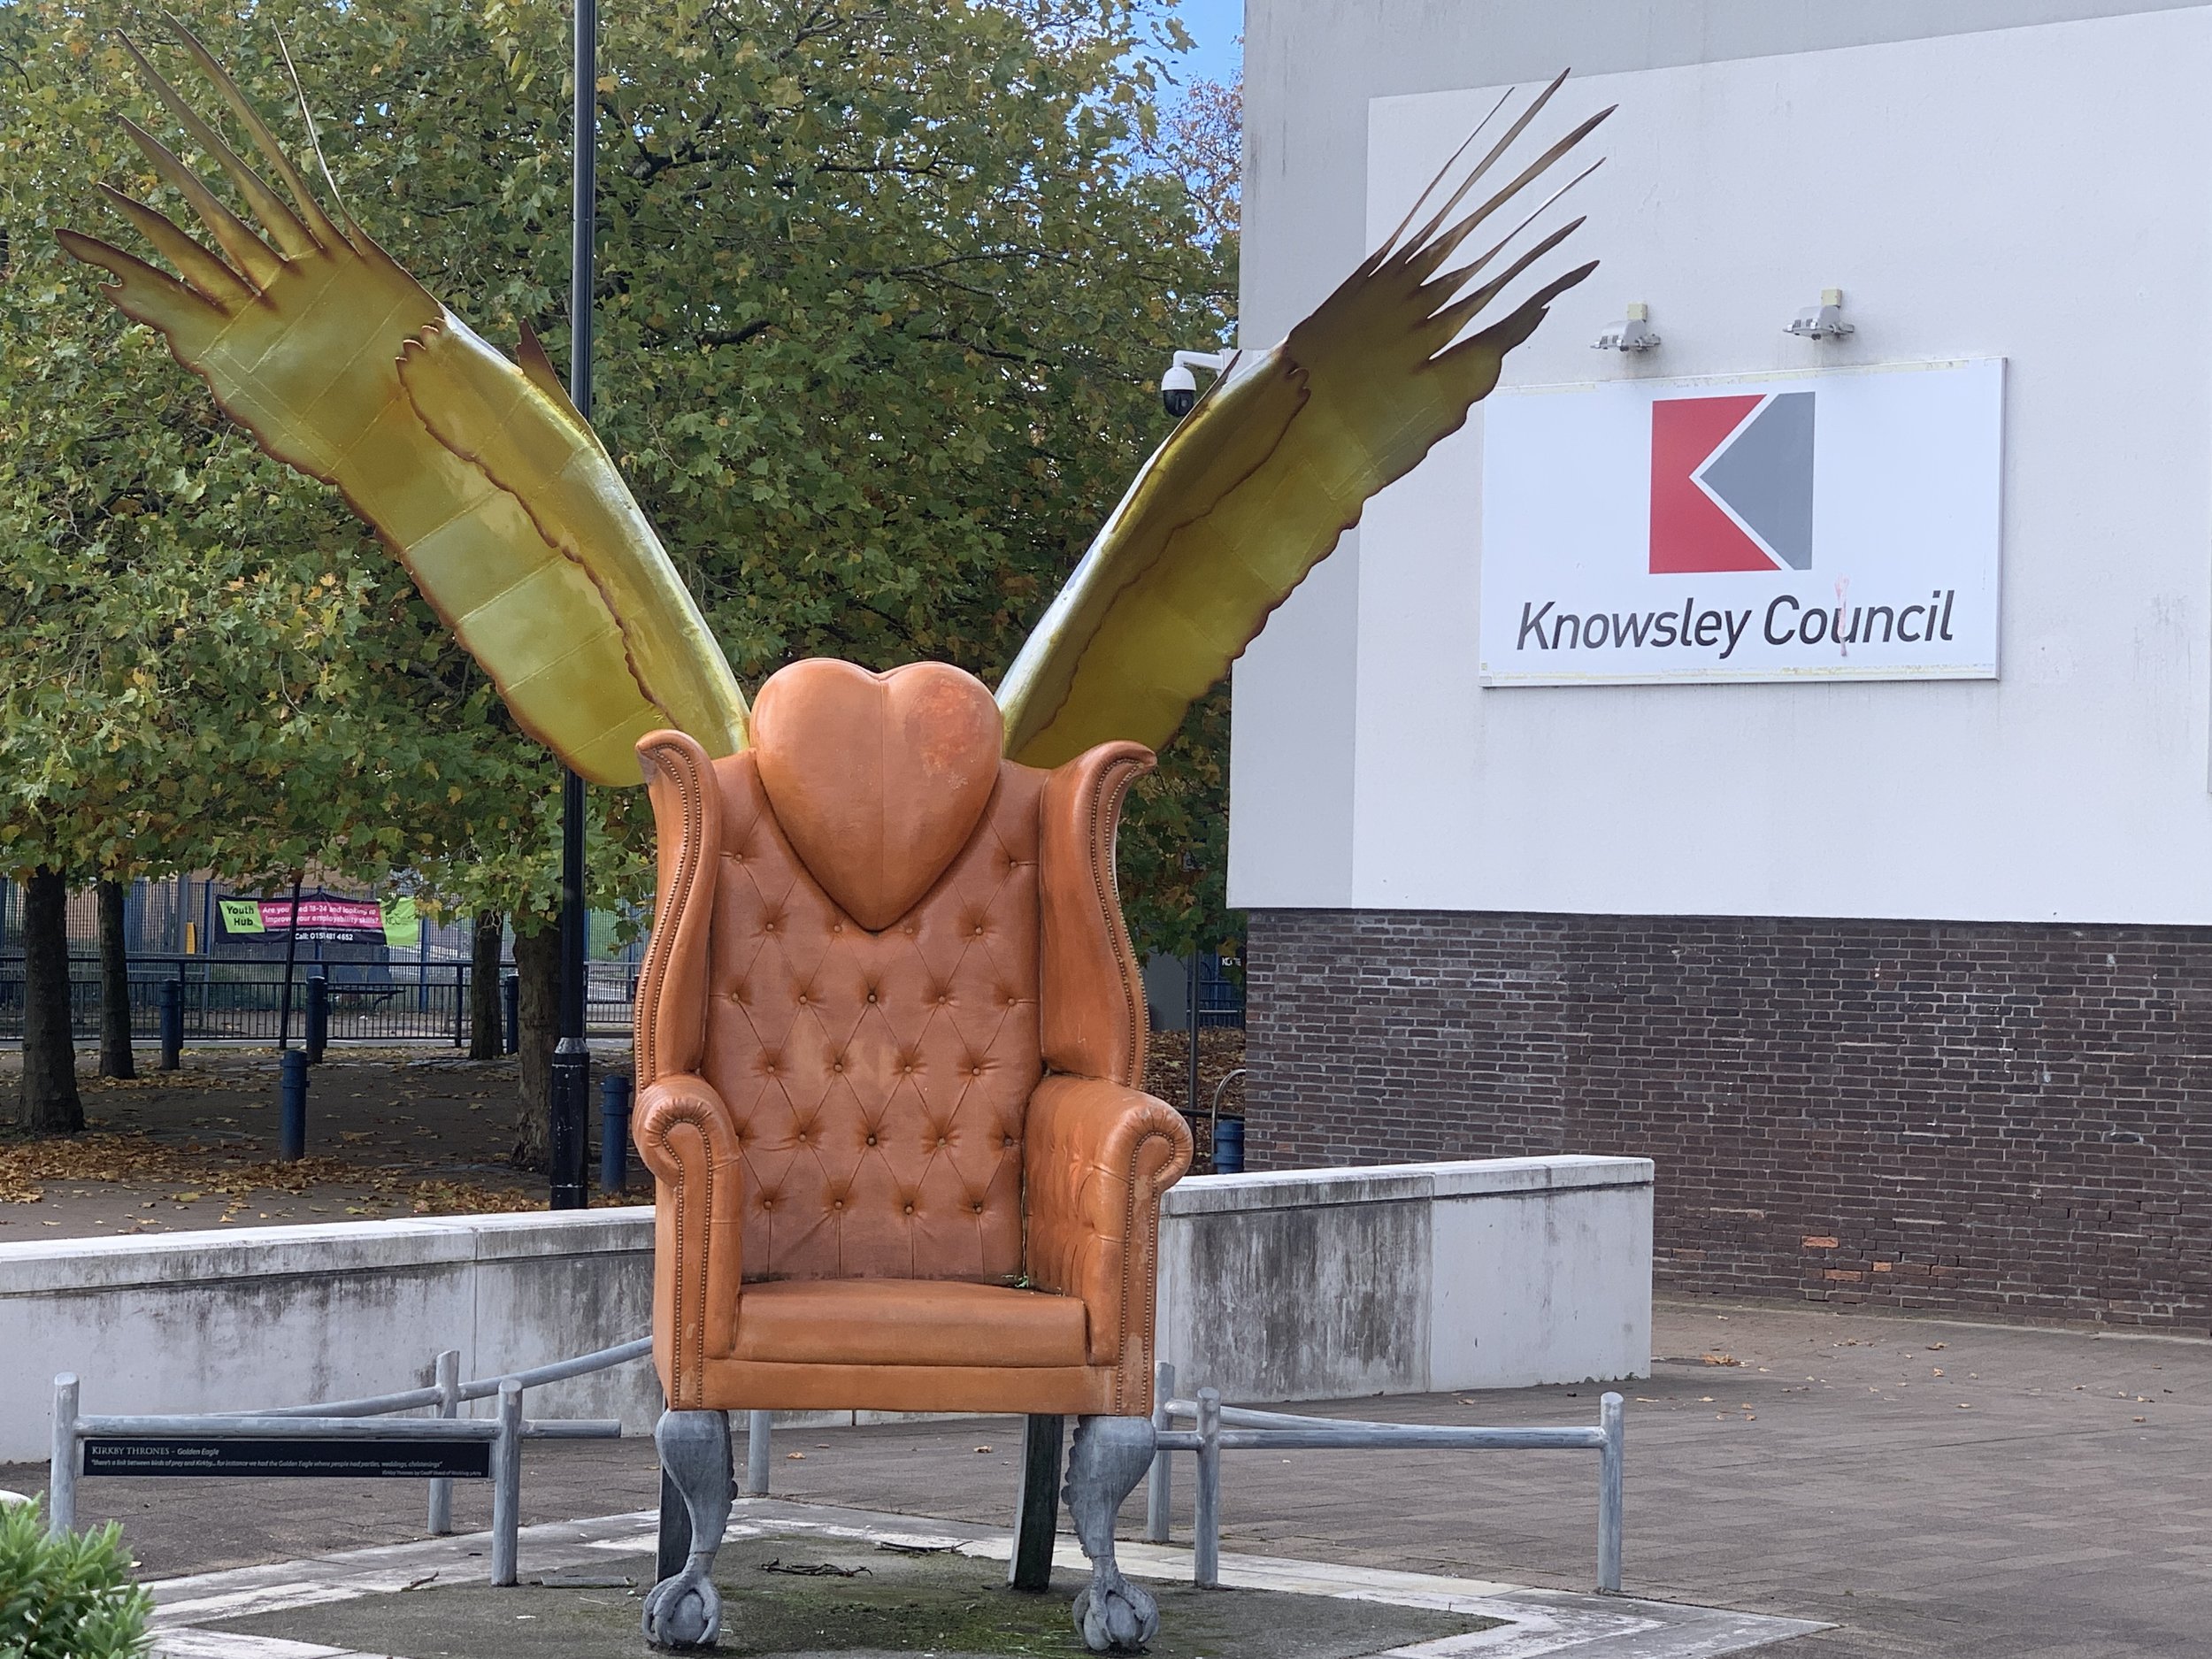 kirkby winged chair image.JPG